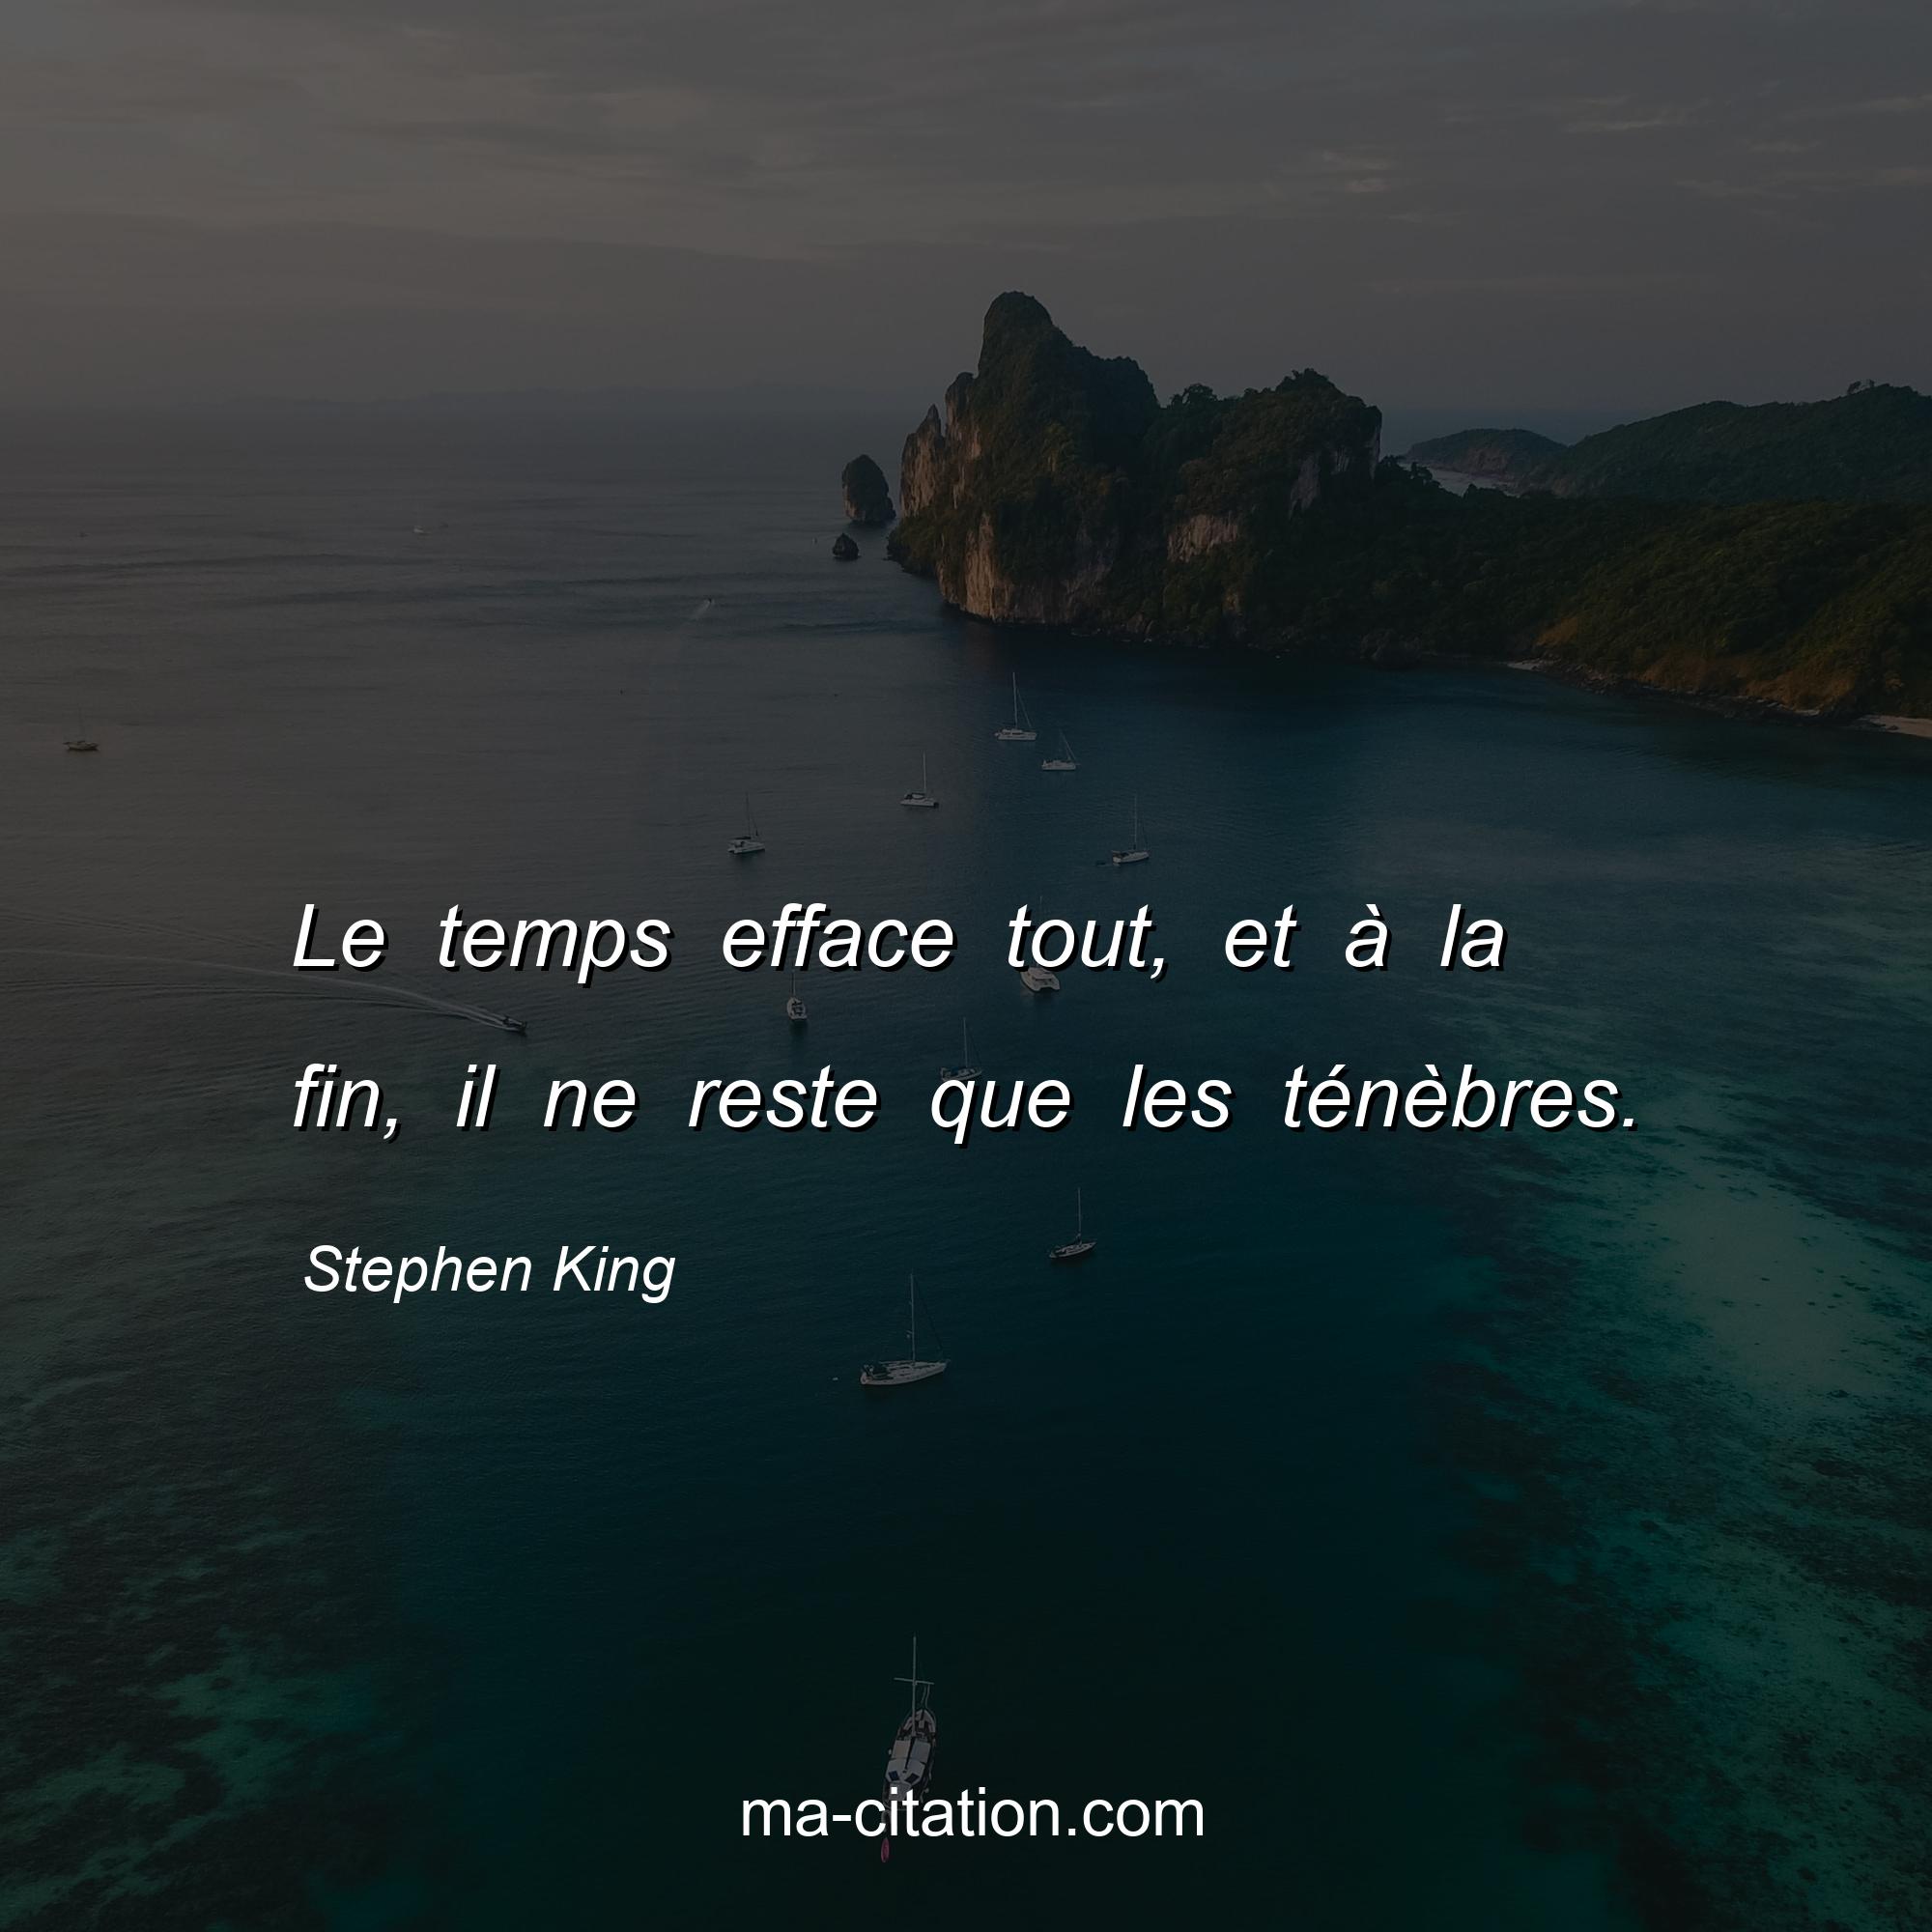 Stephen King : Le temps efface tout, et à la fin, il ne reste que les ténèbres.